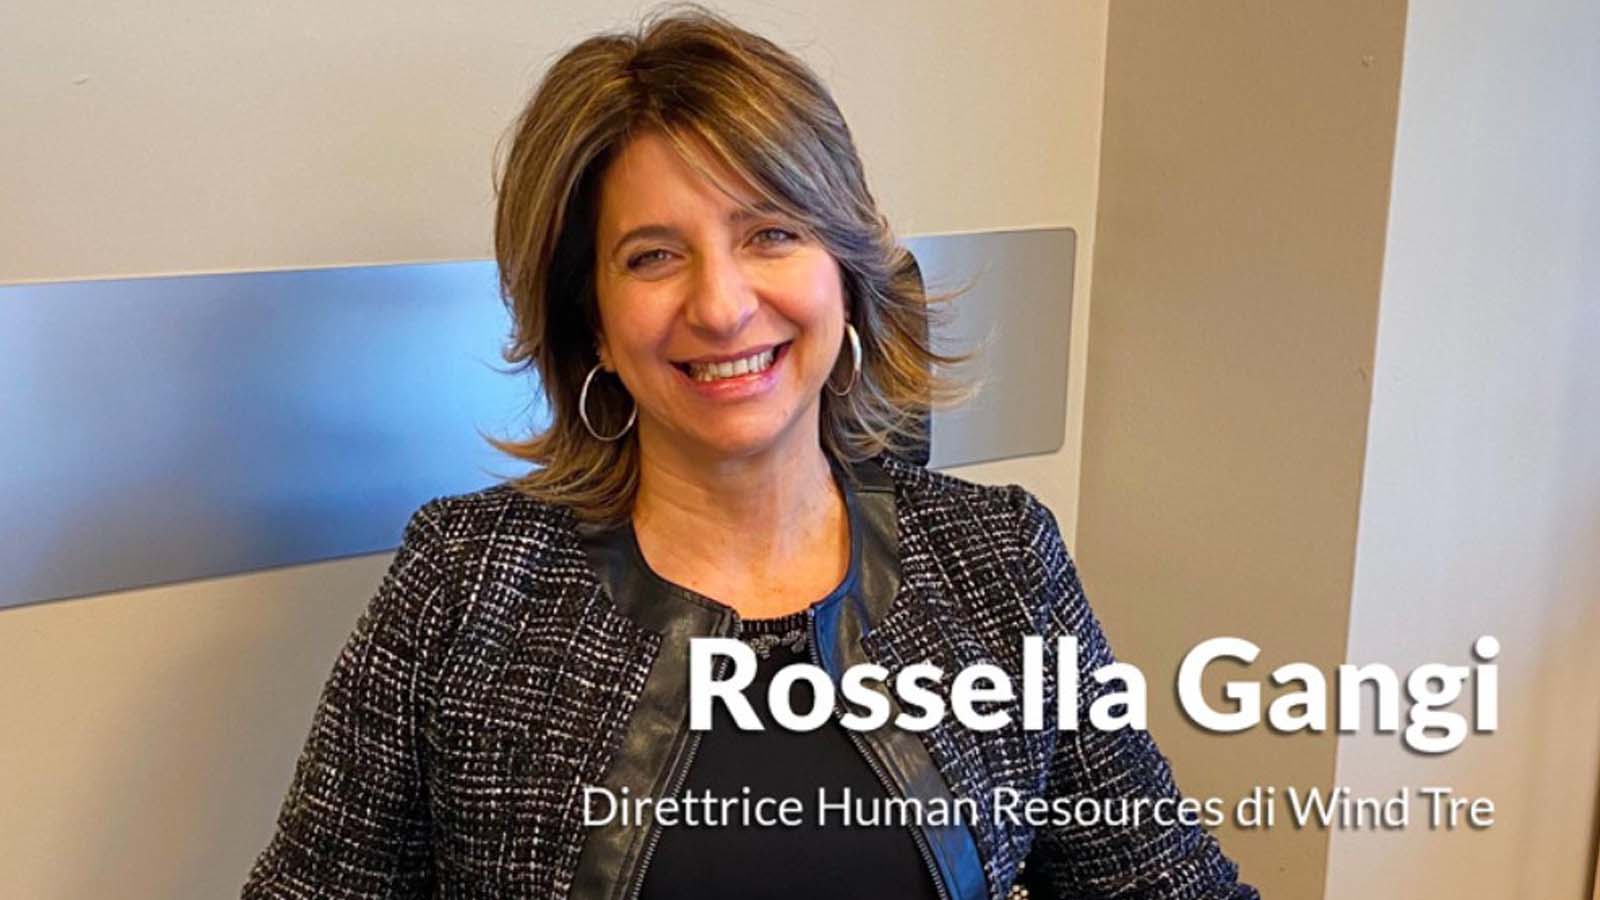 Rossella Gangi, direttrice HR di WINDTRE, celebra l’impegno costante per le persone